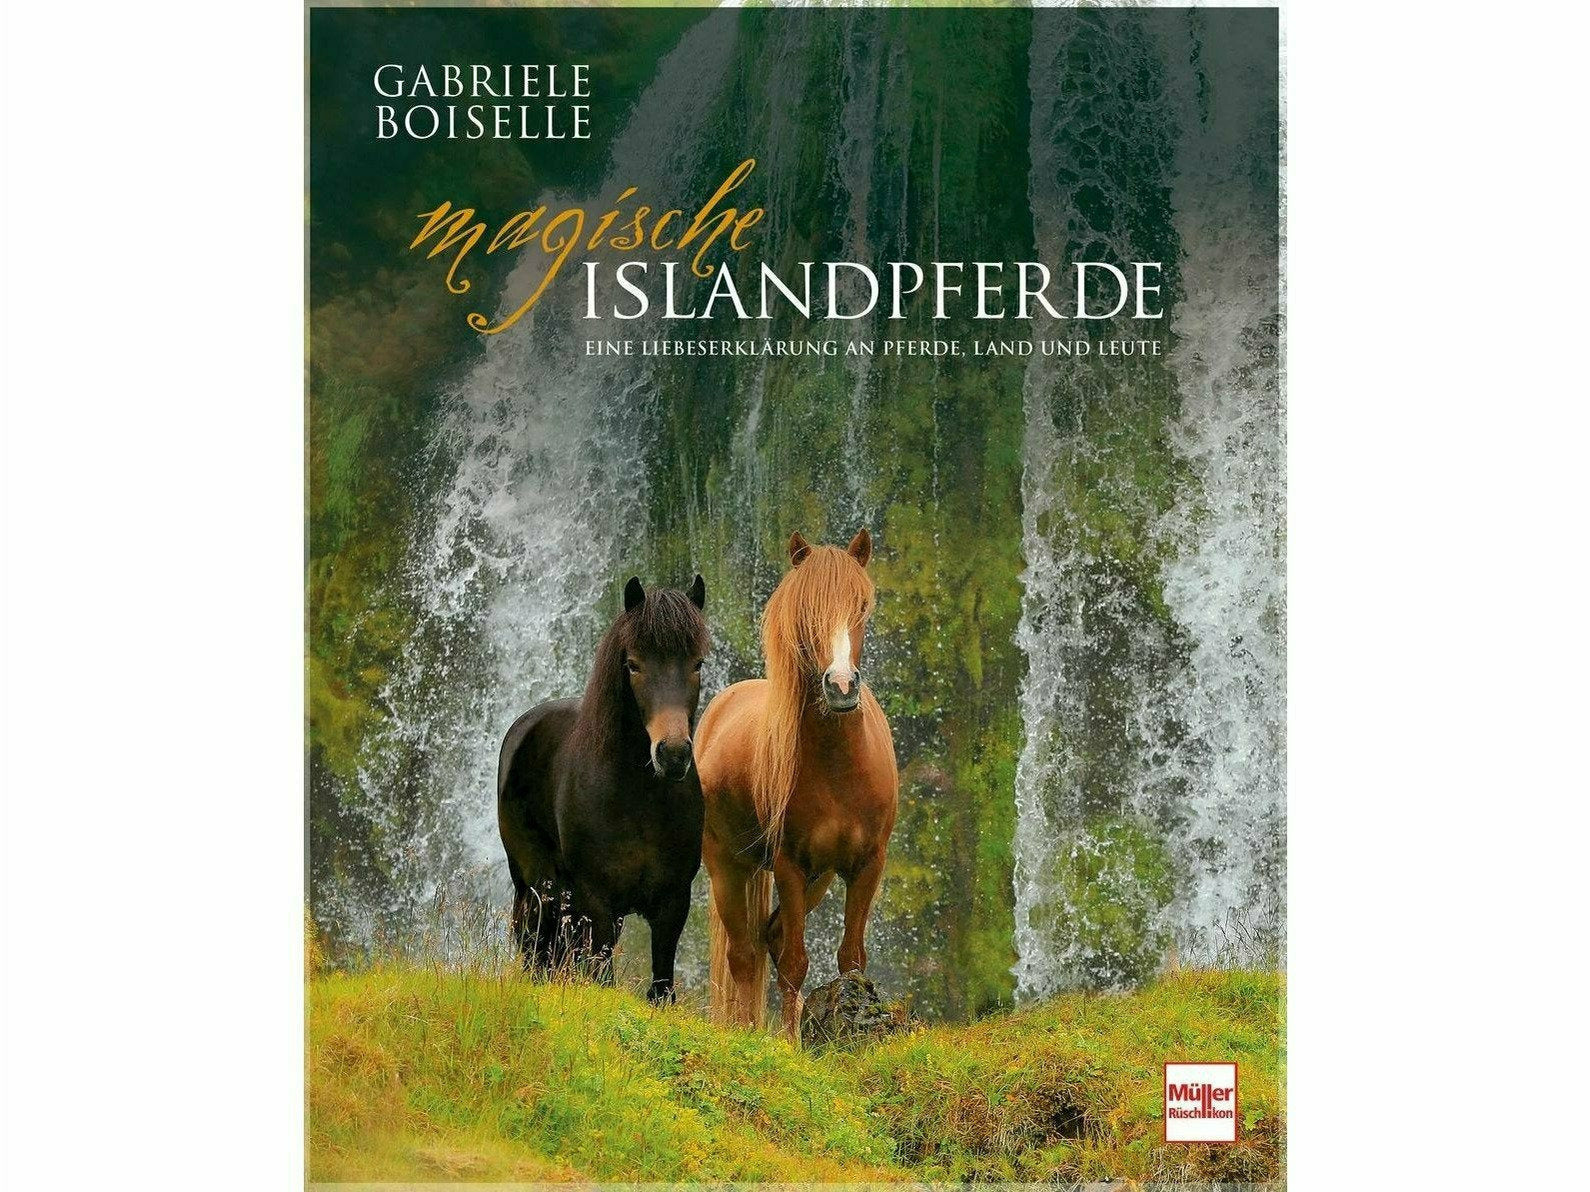 Das perfekte Buch für alle Islandpferdefreunde und Reiter Die bekannte Pferdefotografin Gabriele Boiselle nimmt den Leser in diesem Bildband mit auf eine sagenumwobene Vulkaninsel nach Island, zu besonderen Pferden, außergewöhnlichen Menschen und uralter Kultur. Auch als Geschenk für Islandpferde.